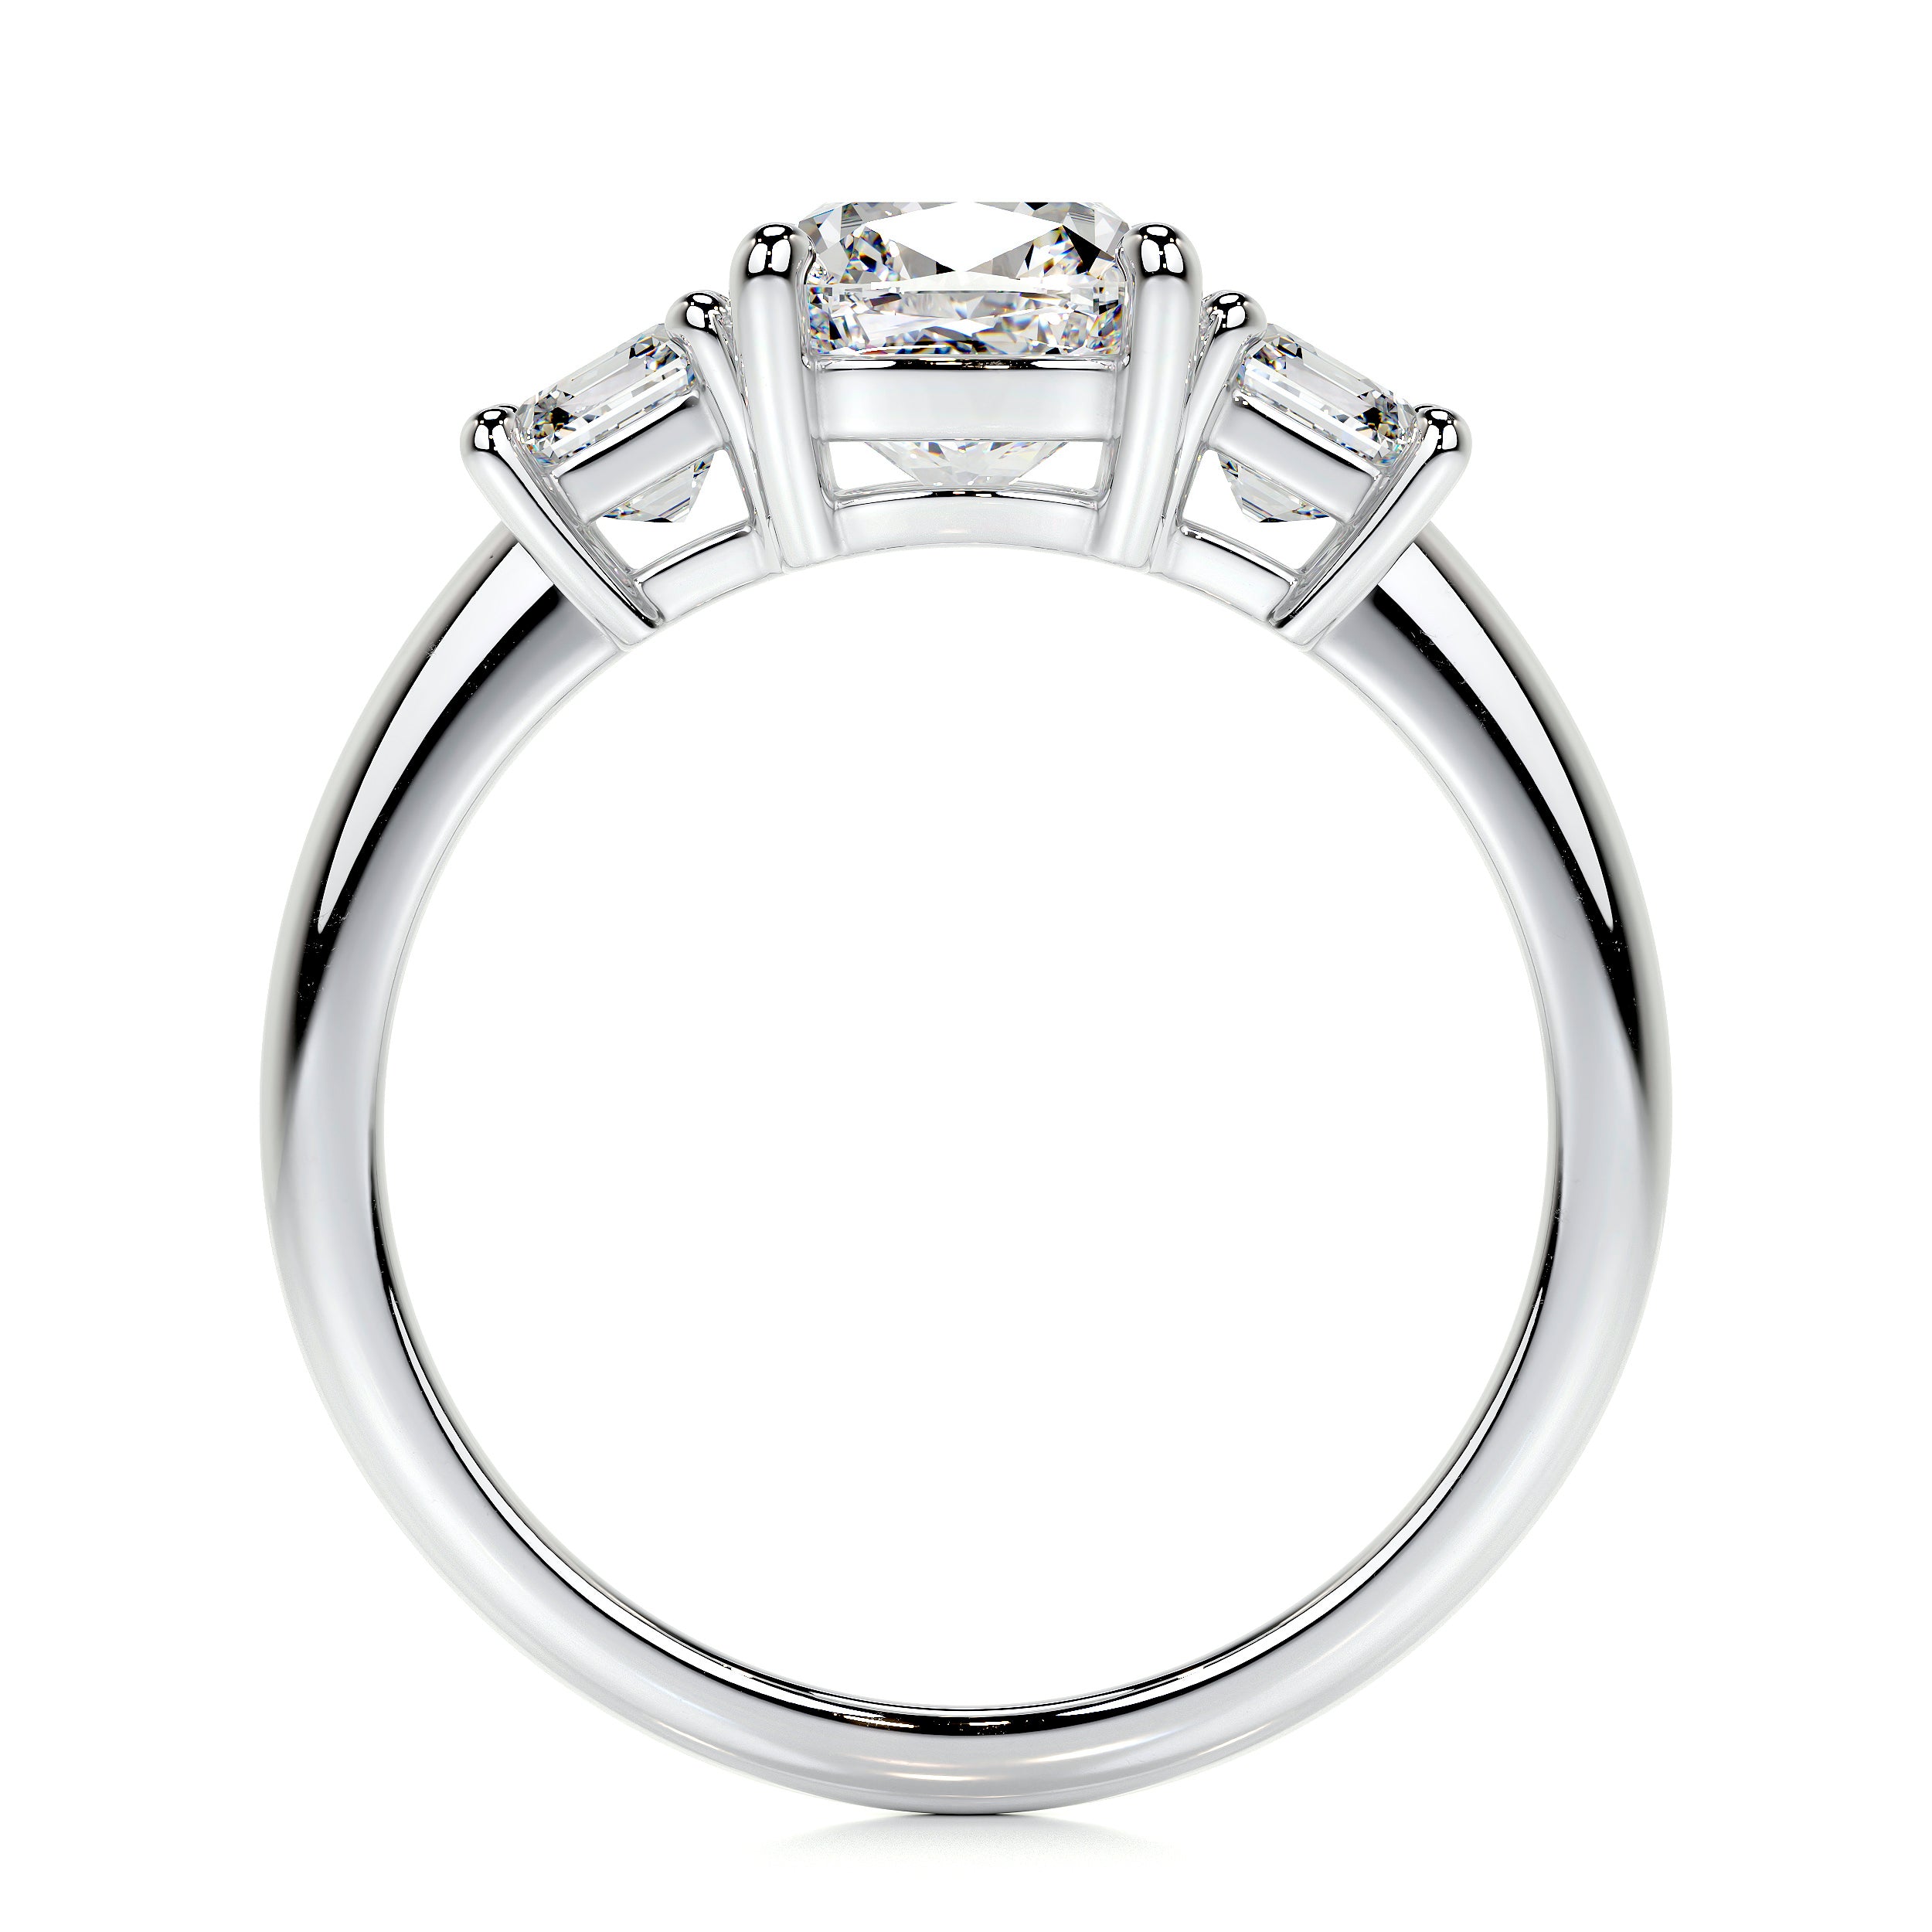 Amanda Lab Grown Diamond Ring   (3 Carat) -14K White Gold